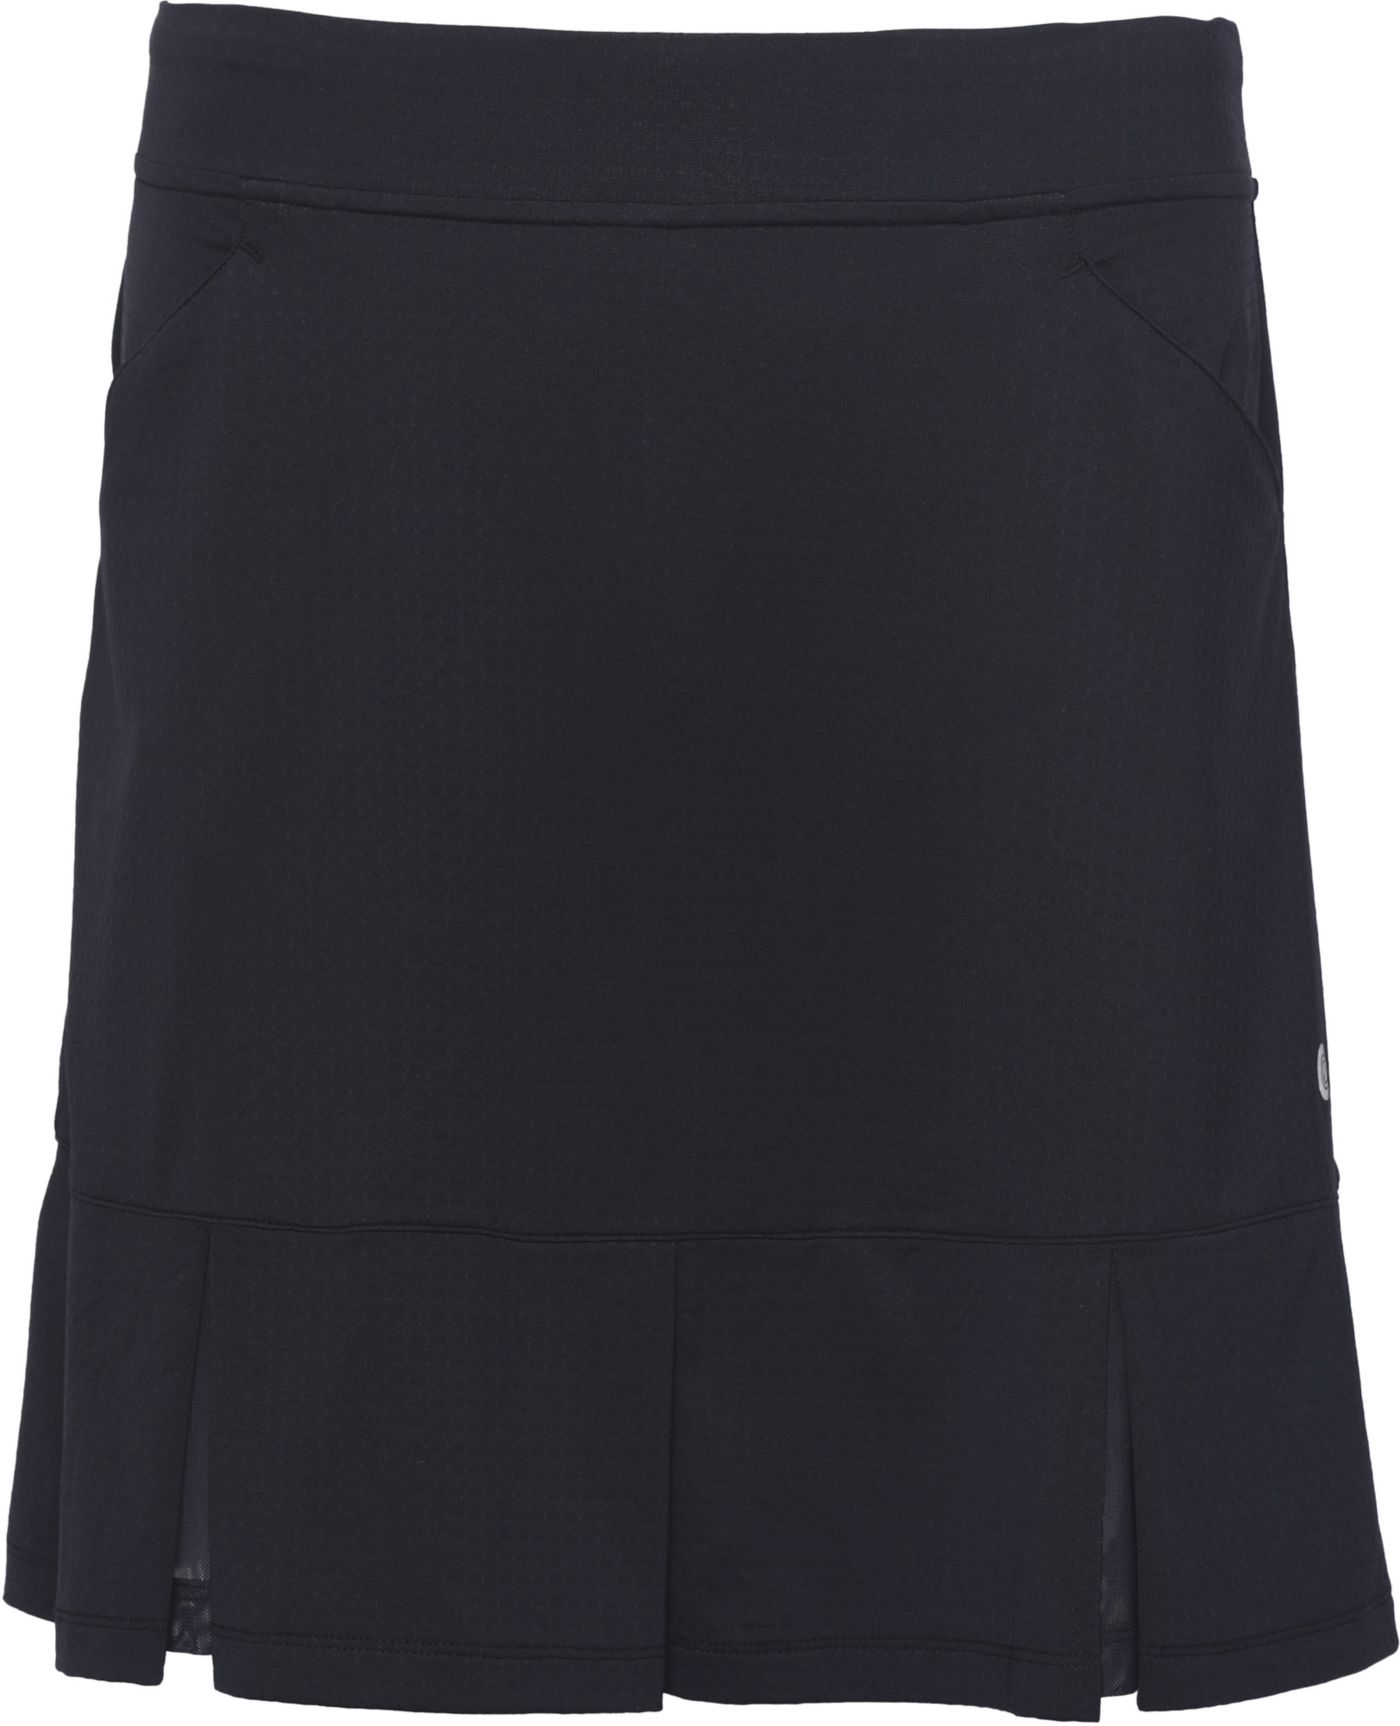 Bette & Court Women's Twirl Pull-On Golf Skirt | Golf Galaxy